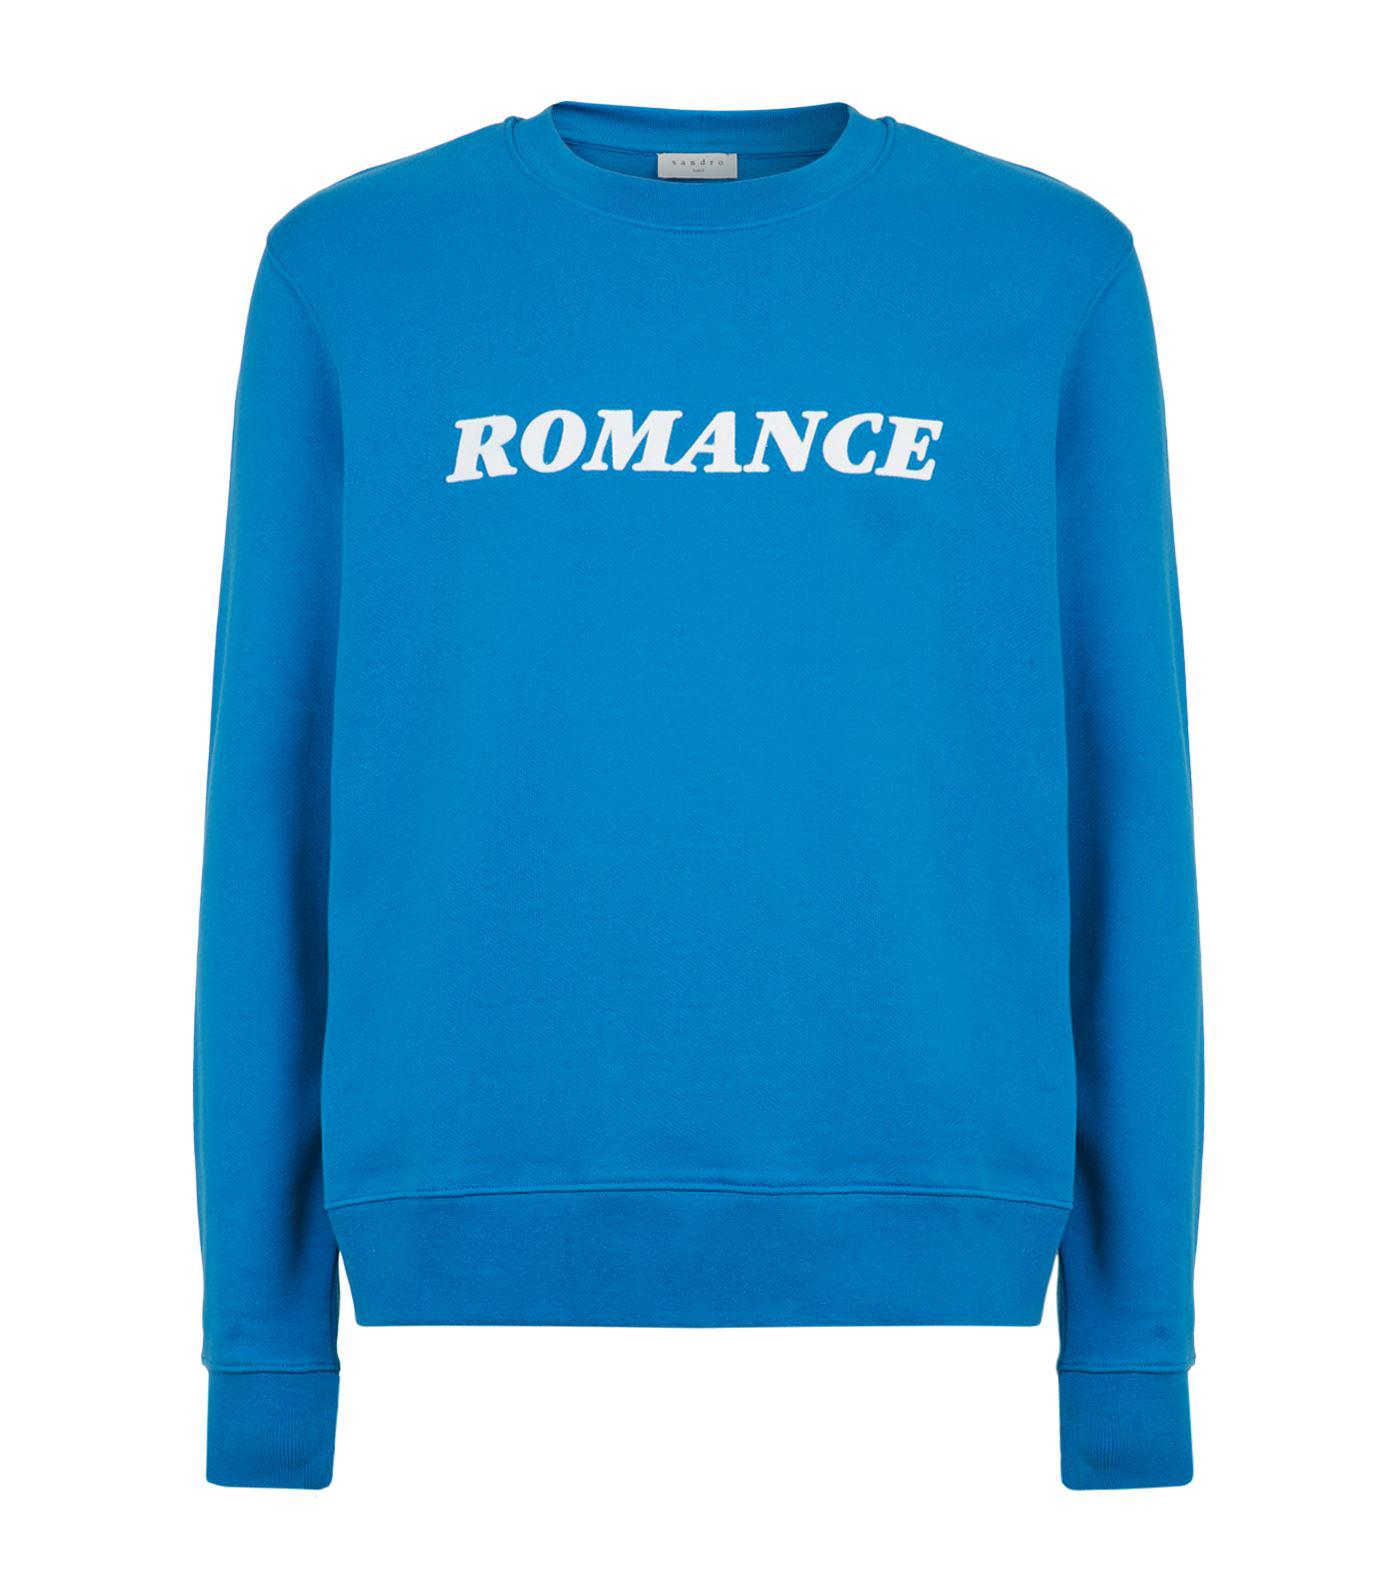 Sandro Fleece Romance Sweatshirt in Blue for Men - Lyst